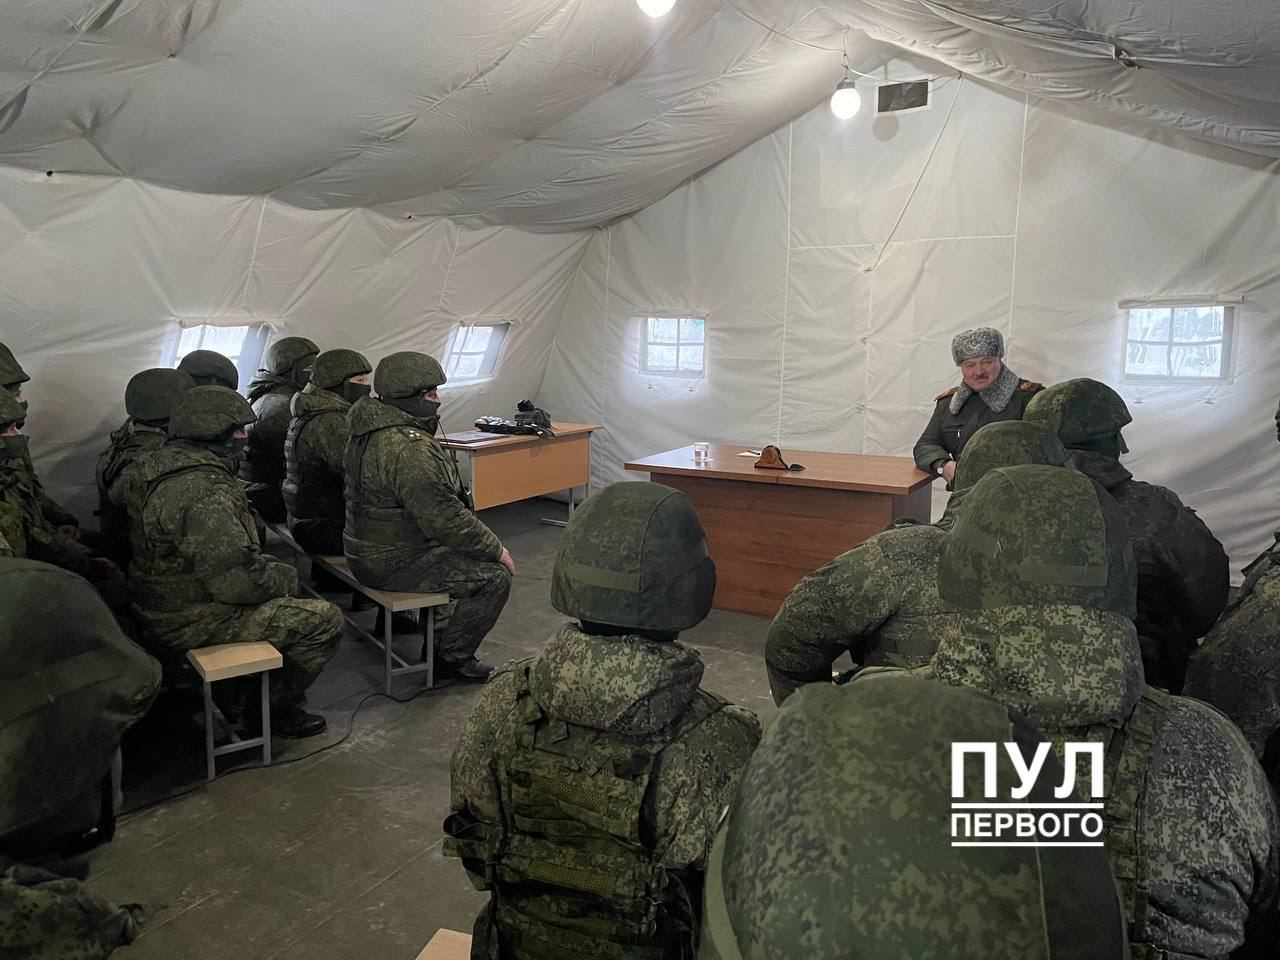 Усатый картофельный диктатор сегодня посетил военный полигон Обуз-Лесновский под Барановичами, где базируется мобилизованные россияне